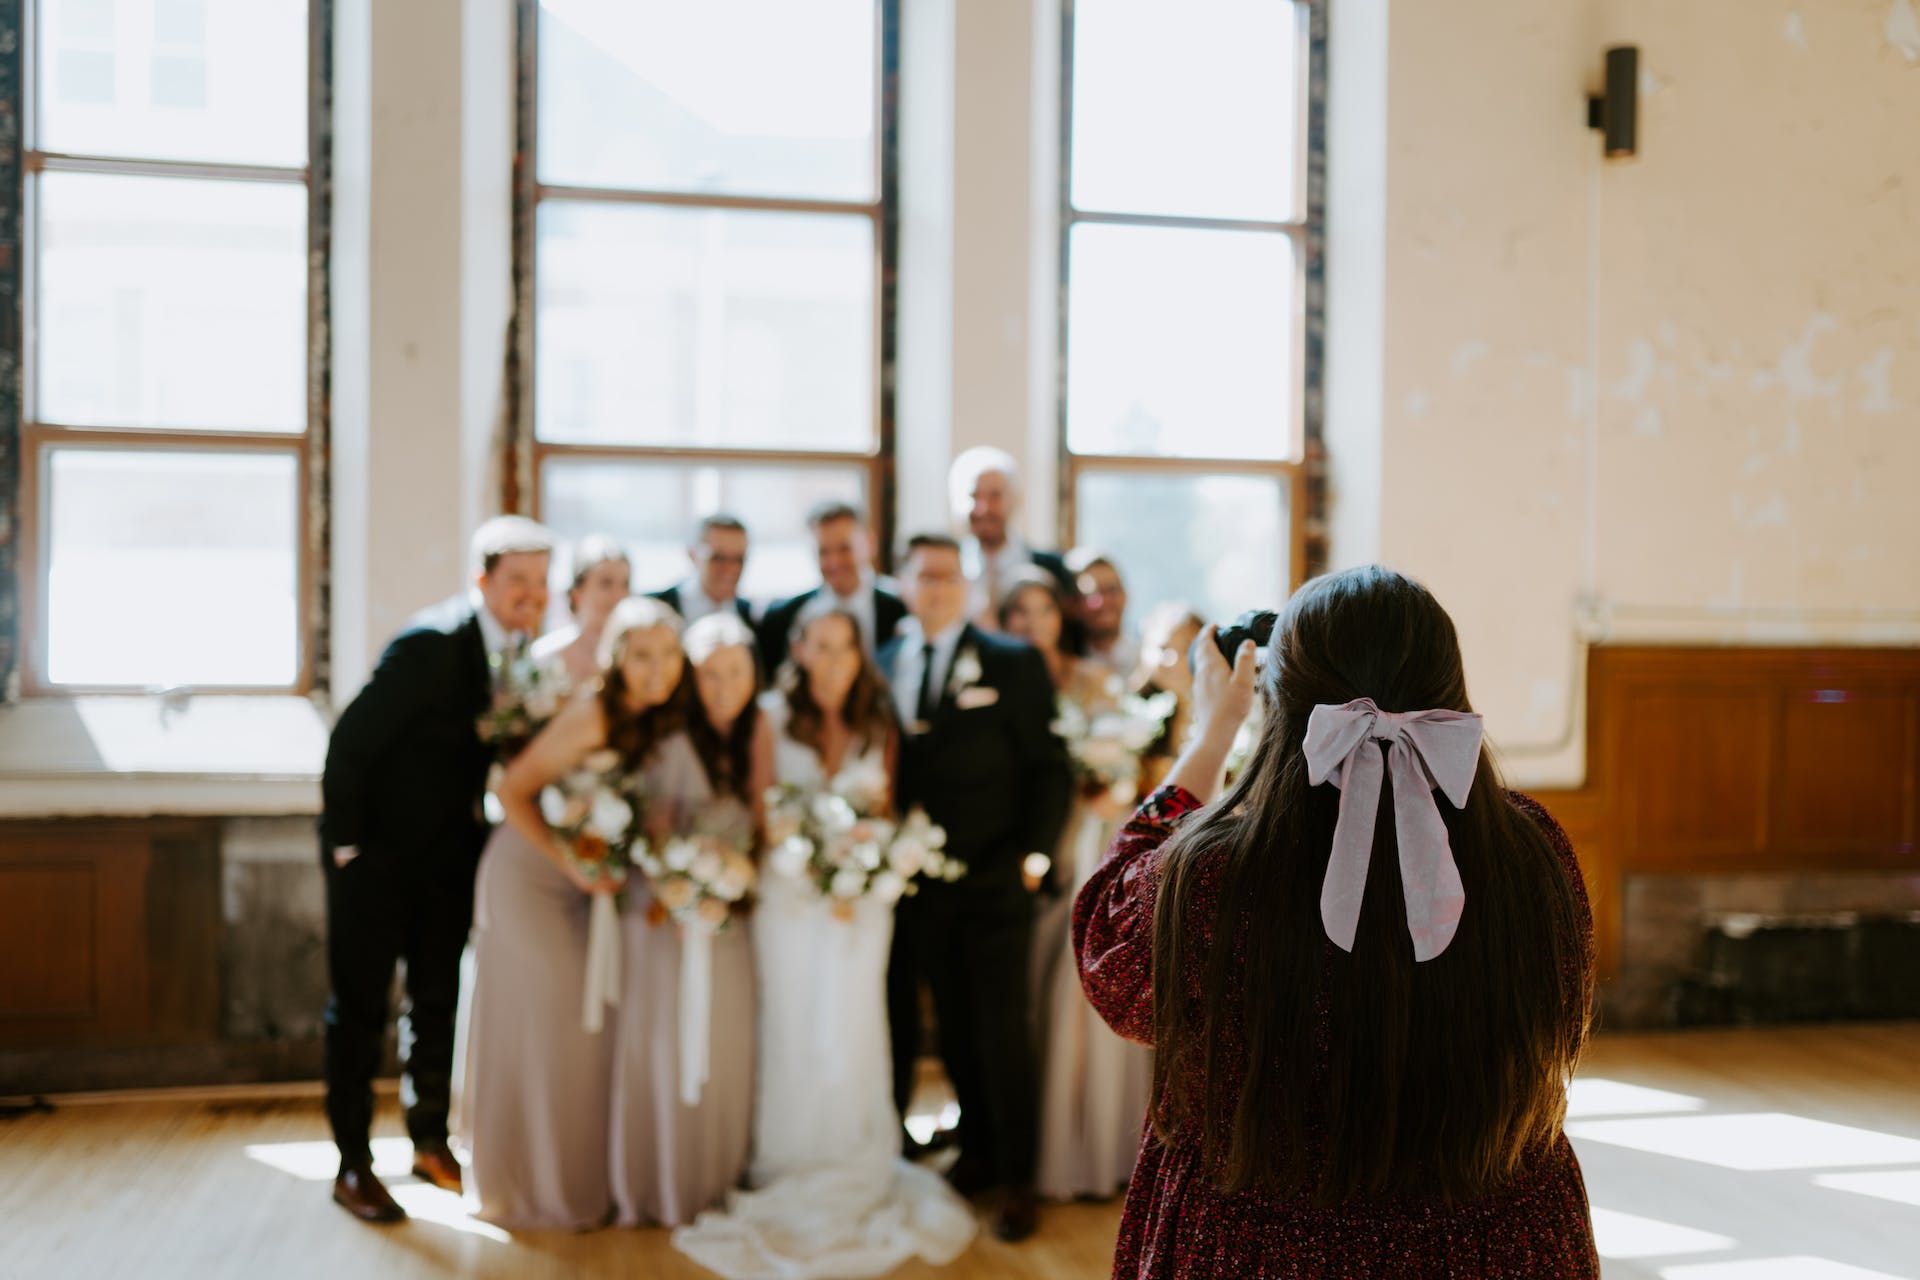 Una mujer haciendo una foto en una boda | Fuente: Pexels